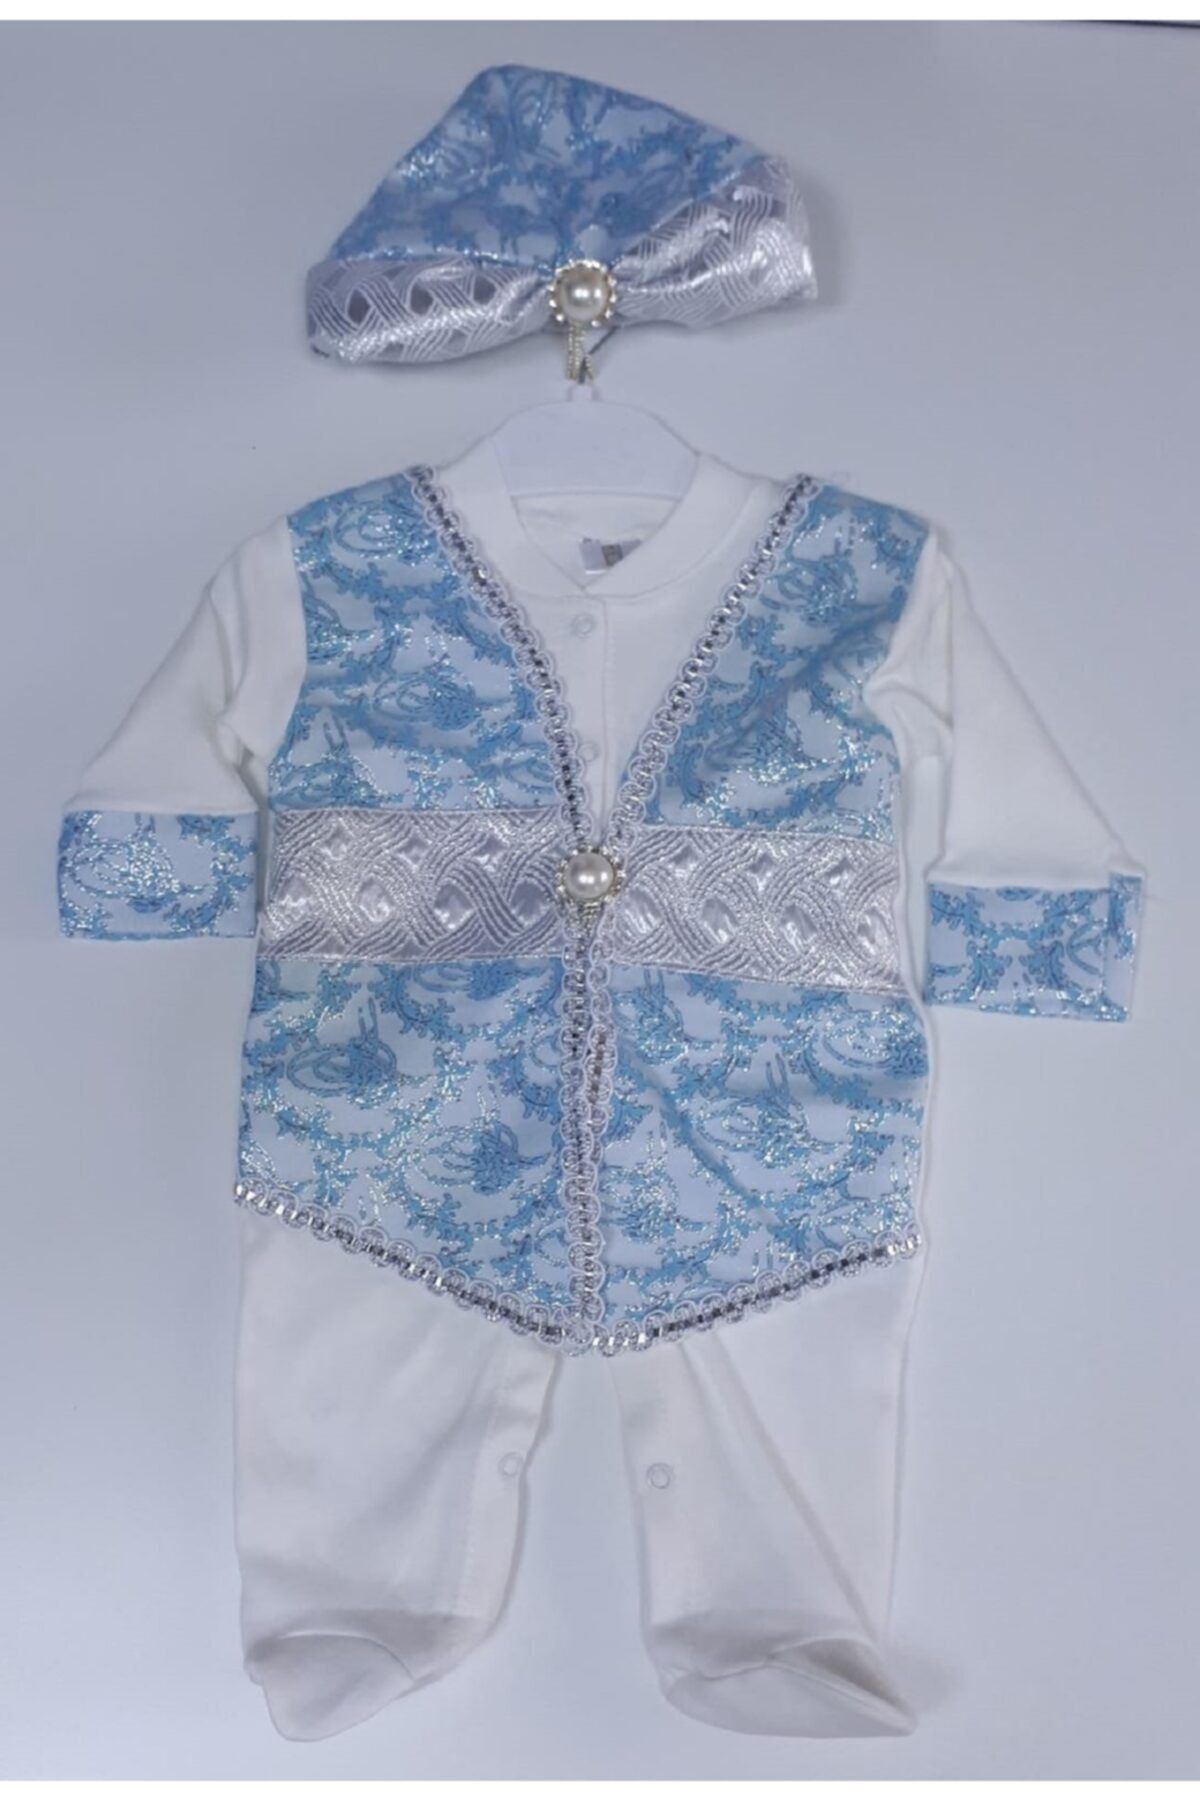 Ponpon Baby Erkek Bebek Şehzade Sultan Tulum Mevlüt Takımı Sünnetlik, Mavi-gümüş, Sünnet Takımı Doğum Hediyesi